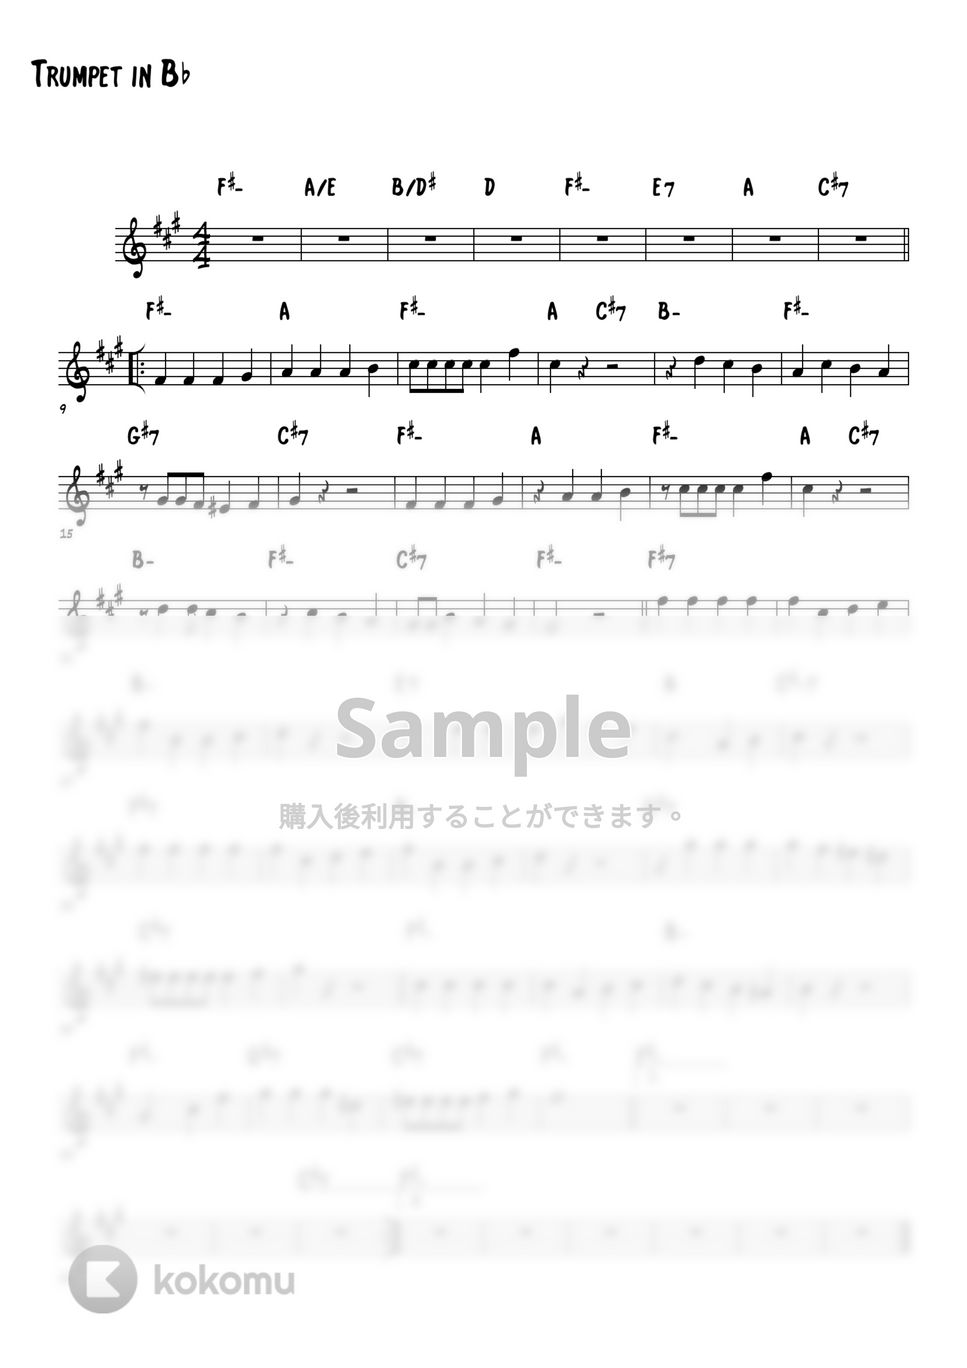 子門真人 - およげたいやきくん (トランペットメロディー楽譜) by 高田将利